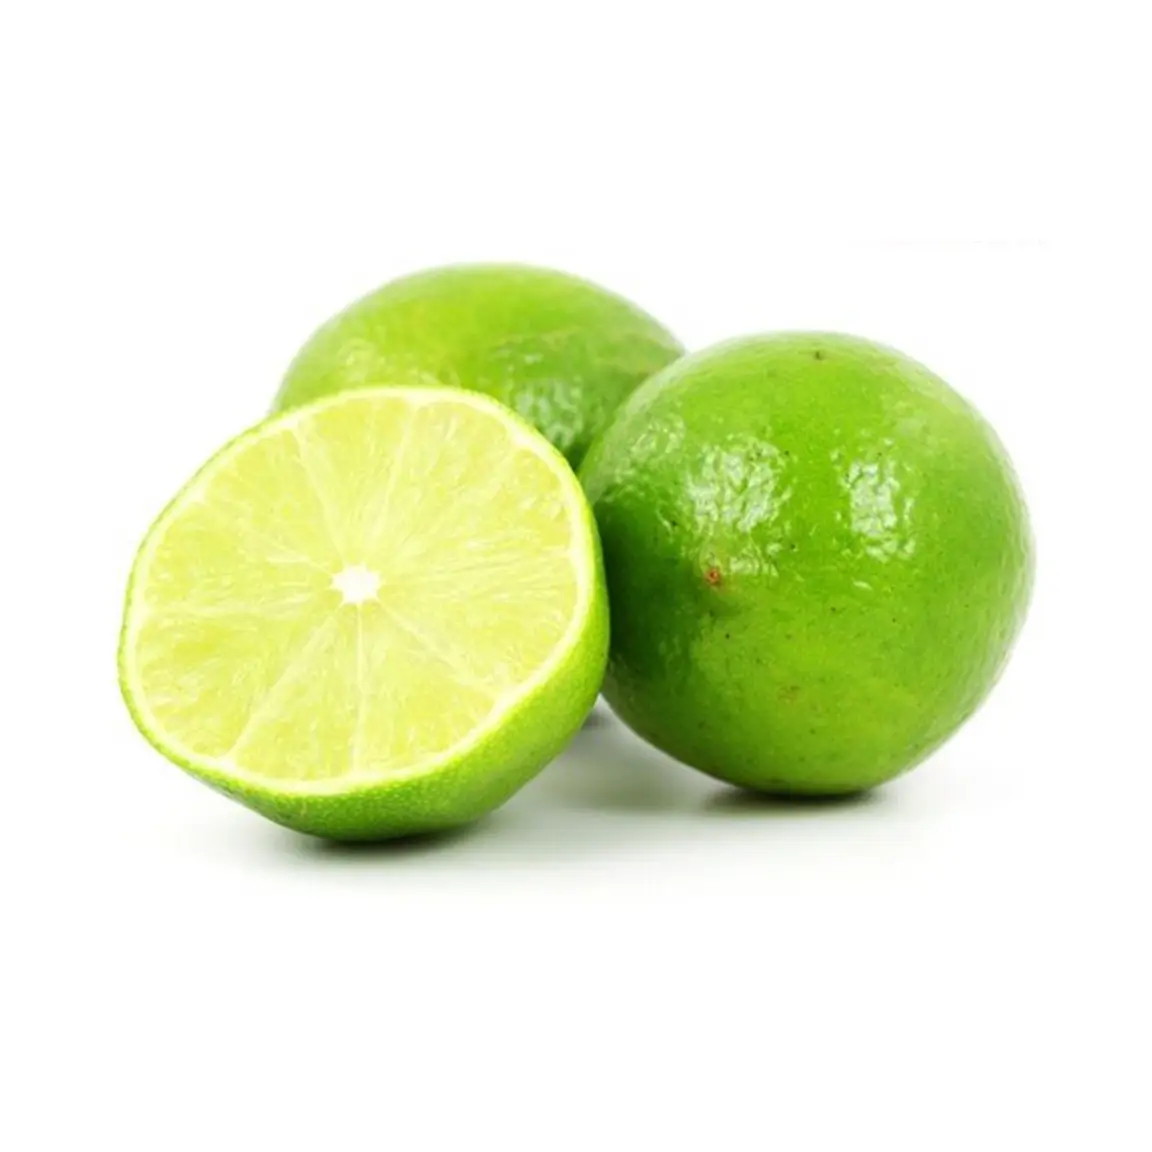 El limón sin semillas es una fruta con muchos beneficios para la salud. Tiene muchos beneficios para la salud y se puede utilizar en muchos platos diferentes.